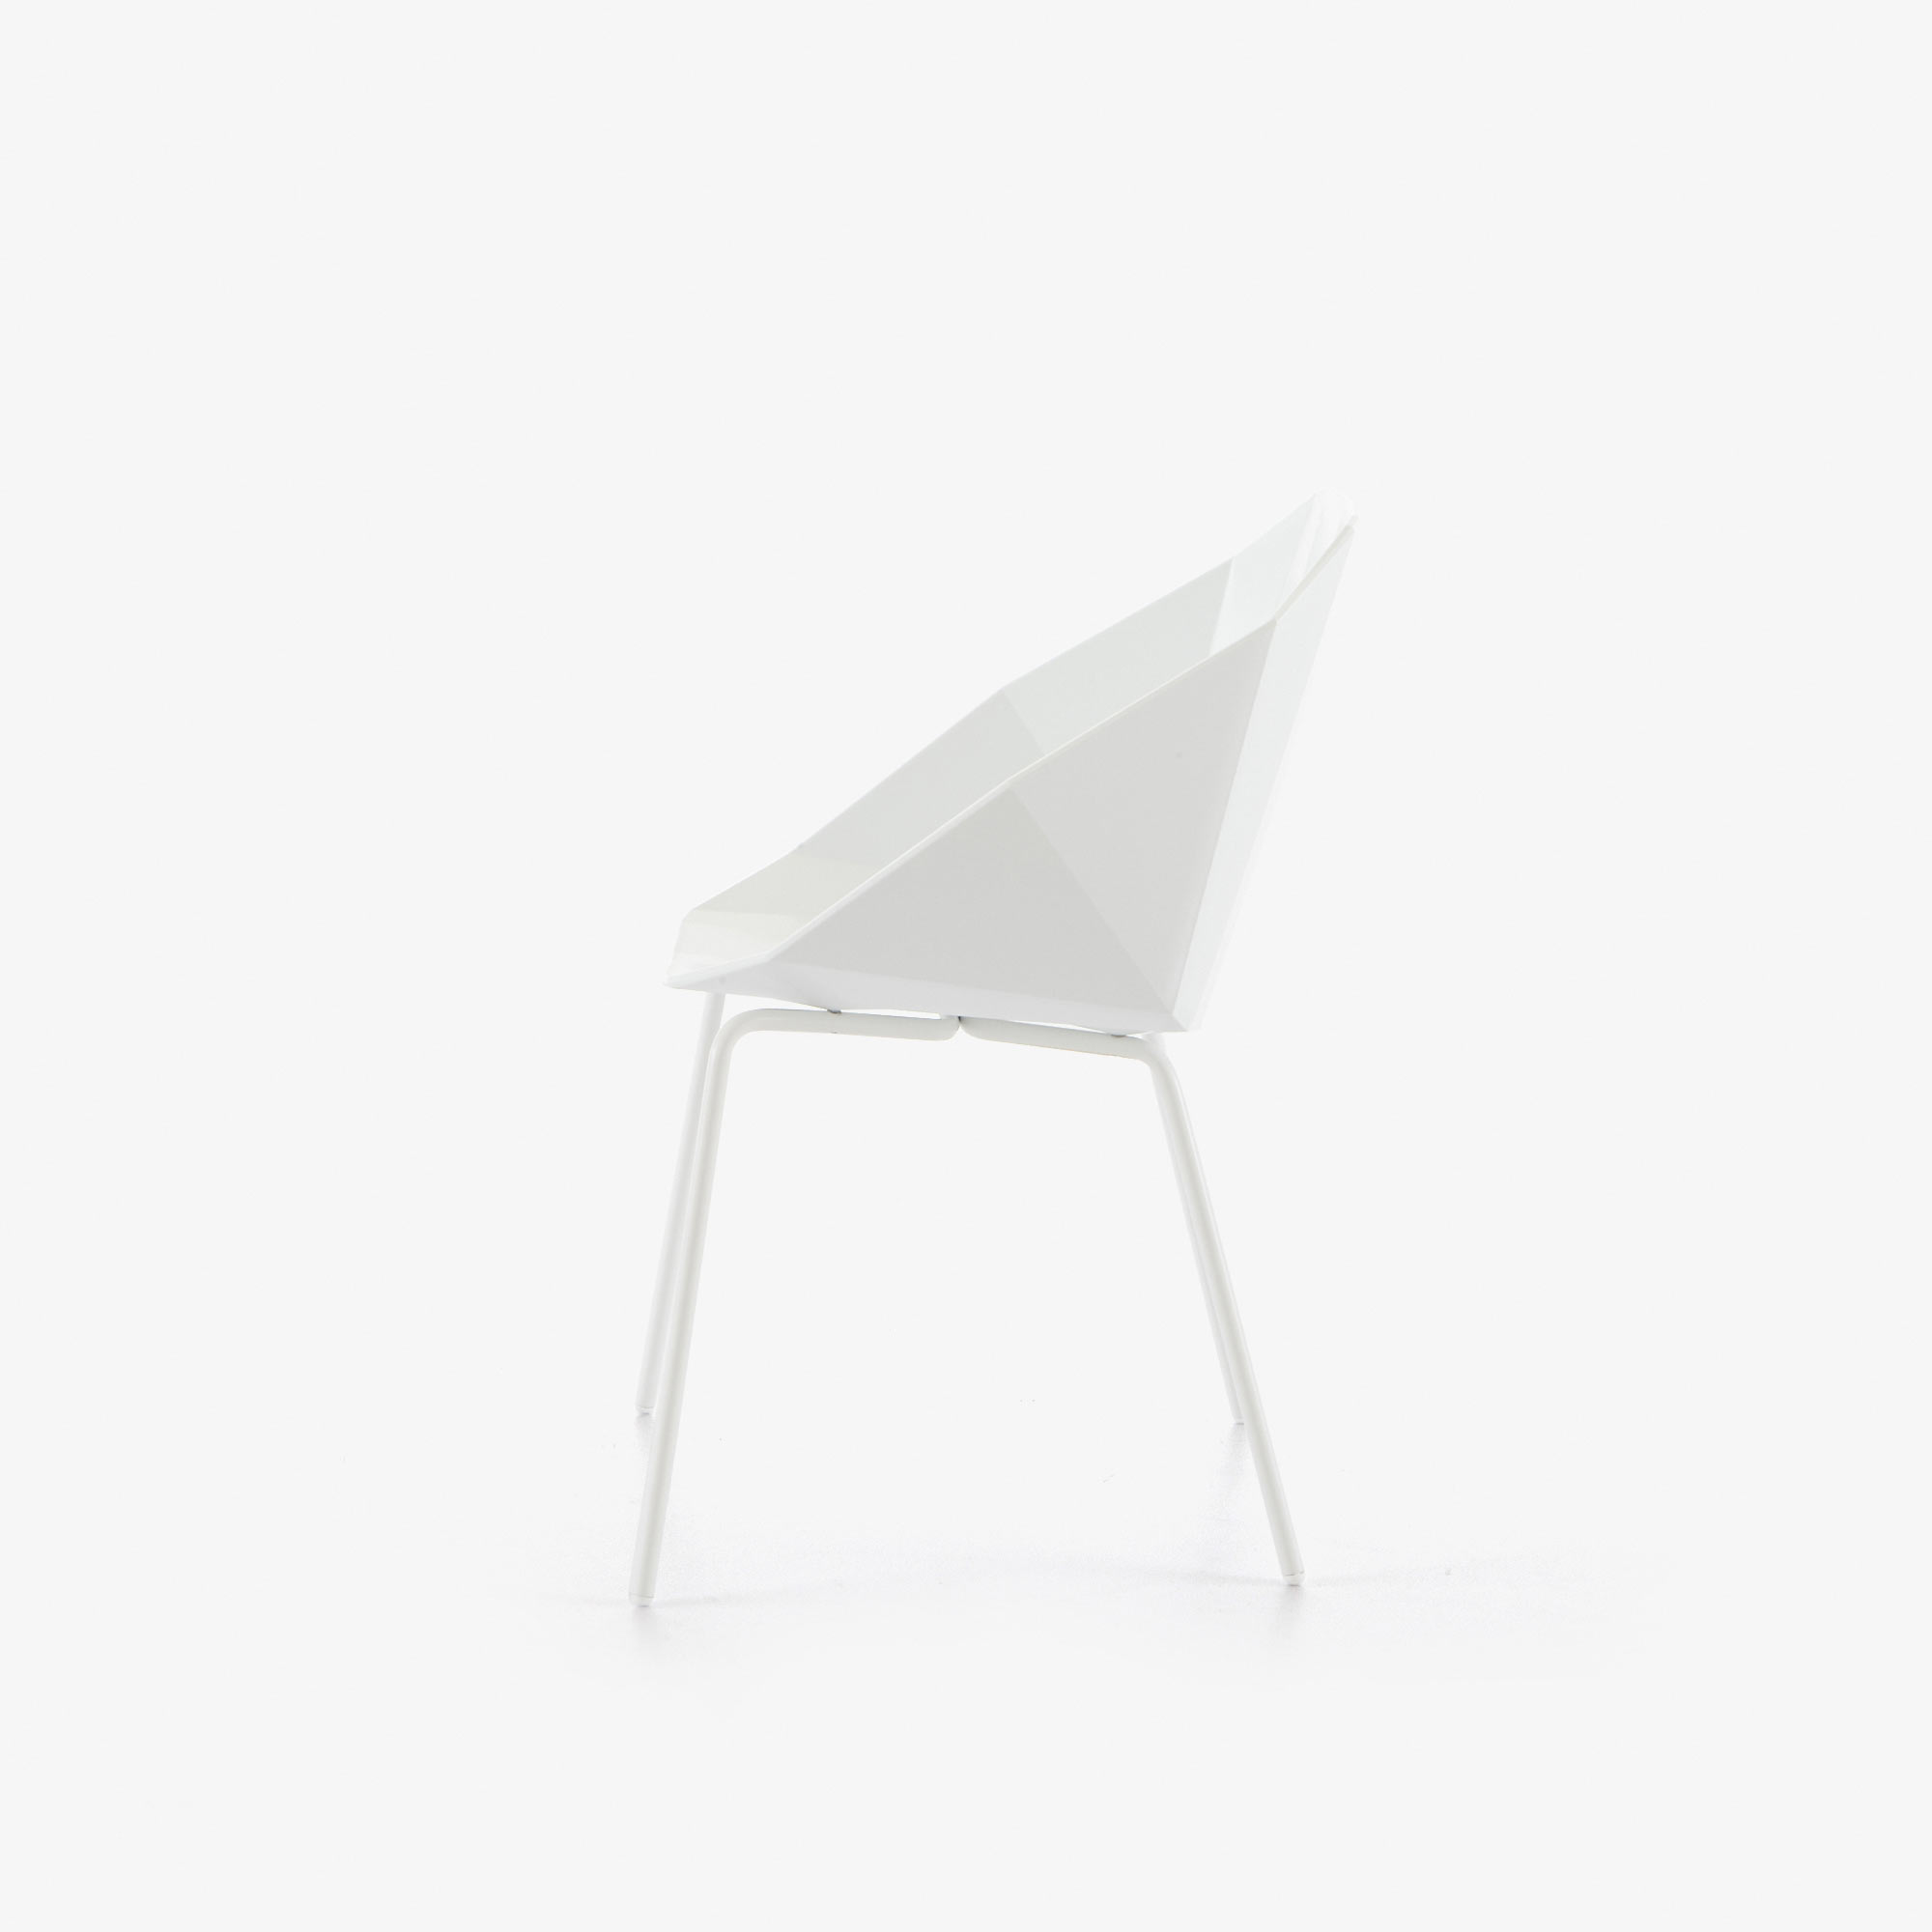 Image 椅子/桥形结构 白色 白色水性漆底座 3